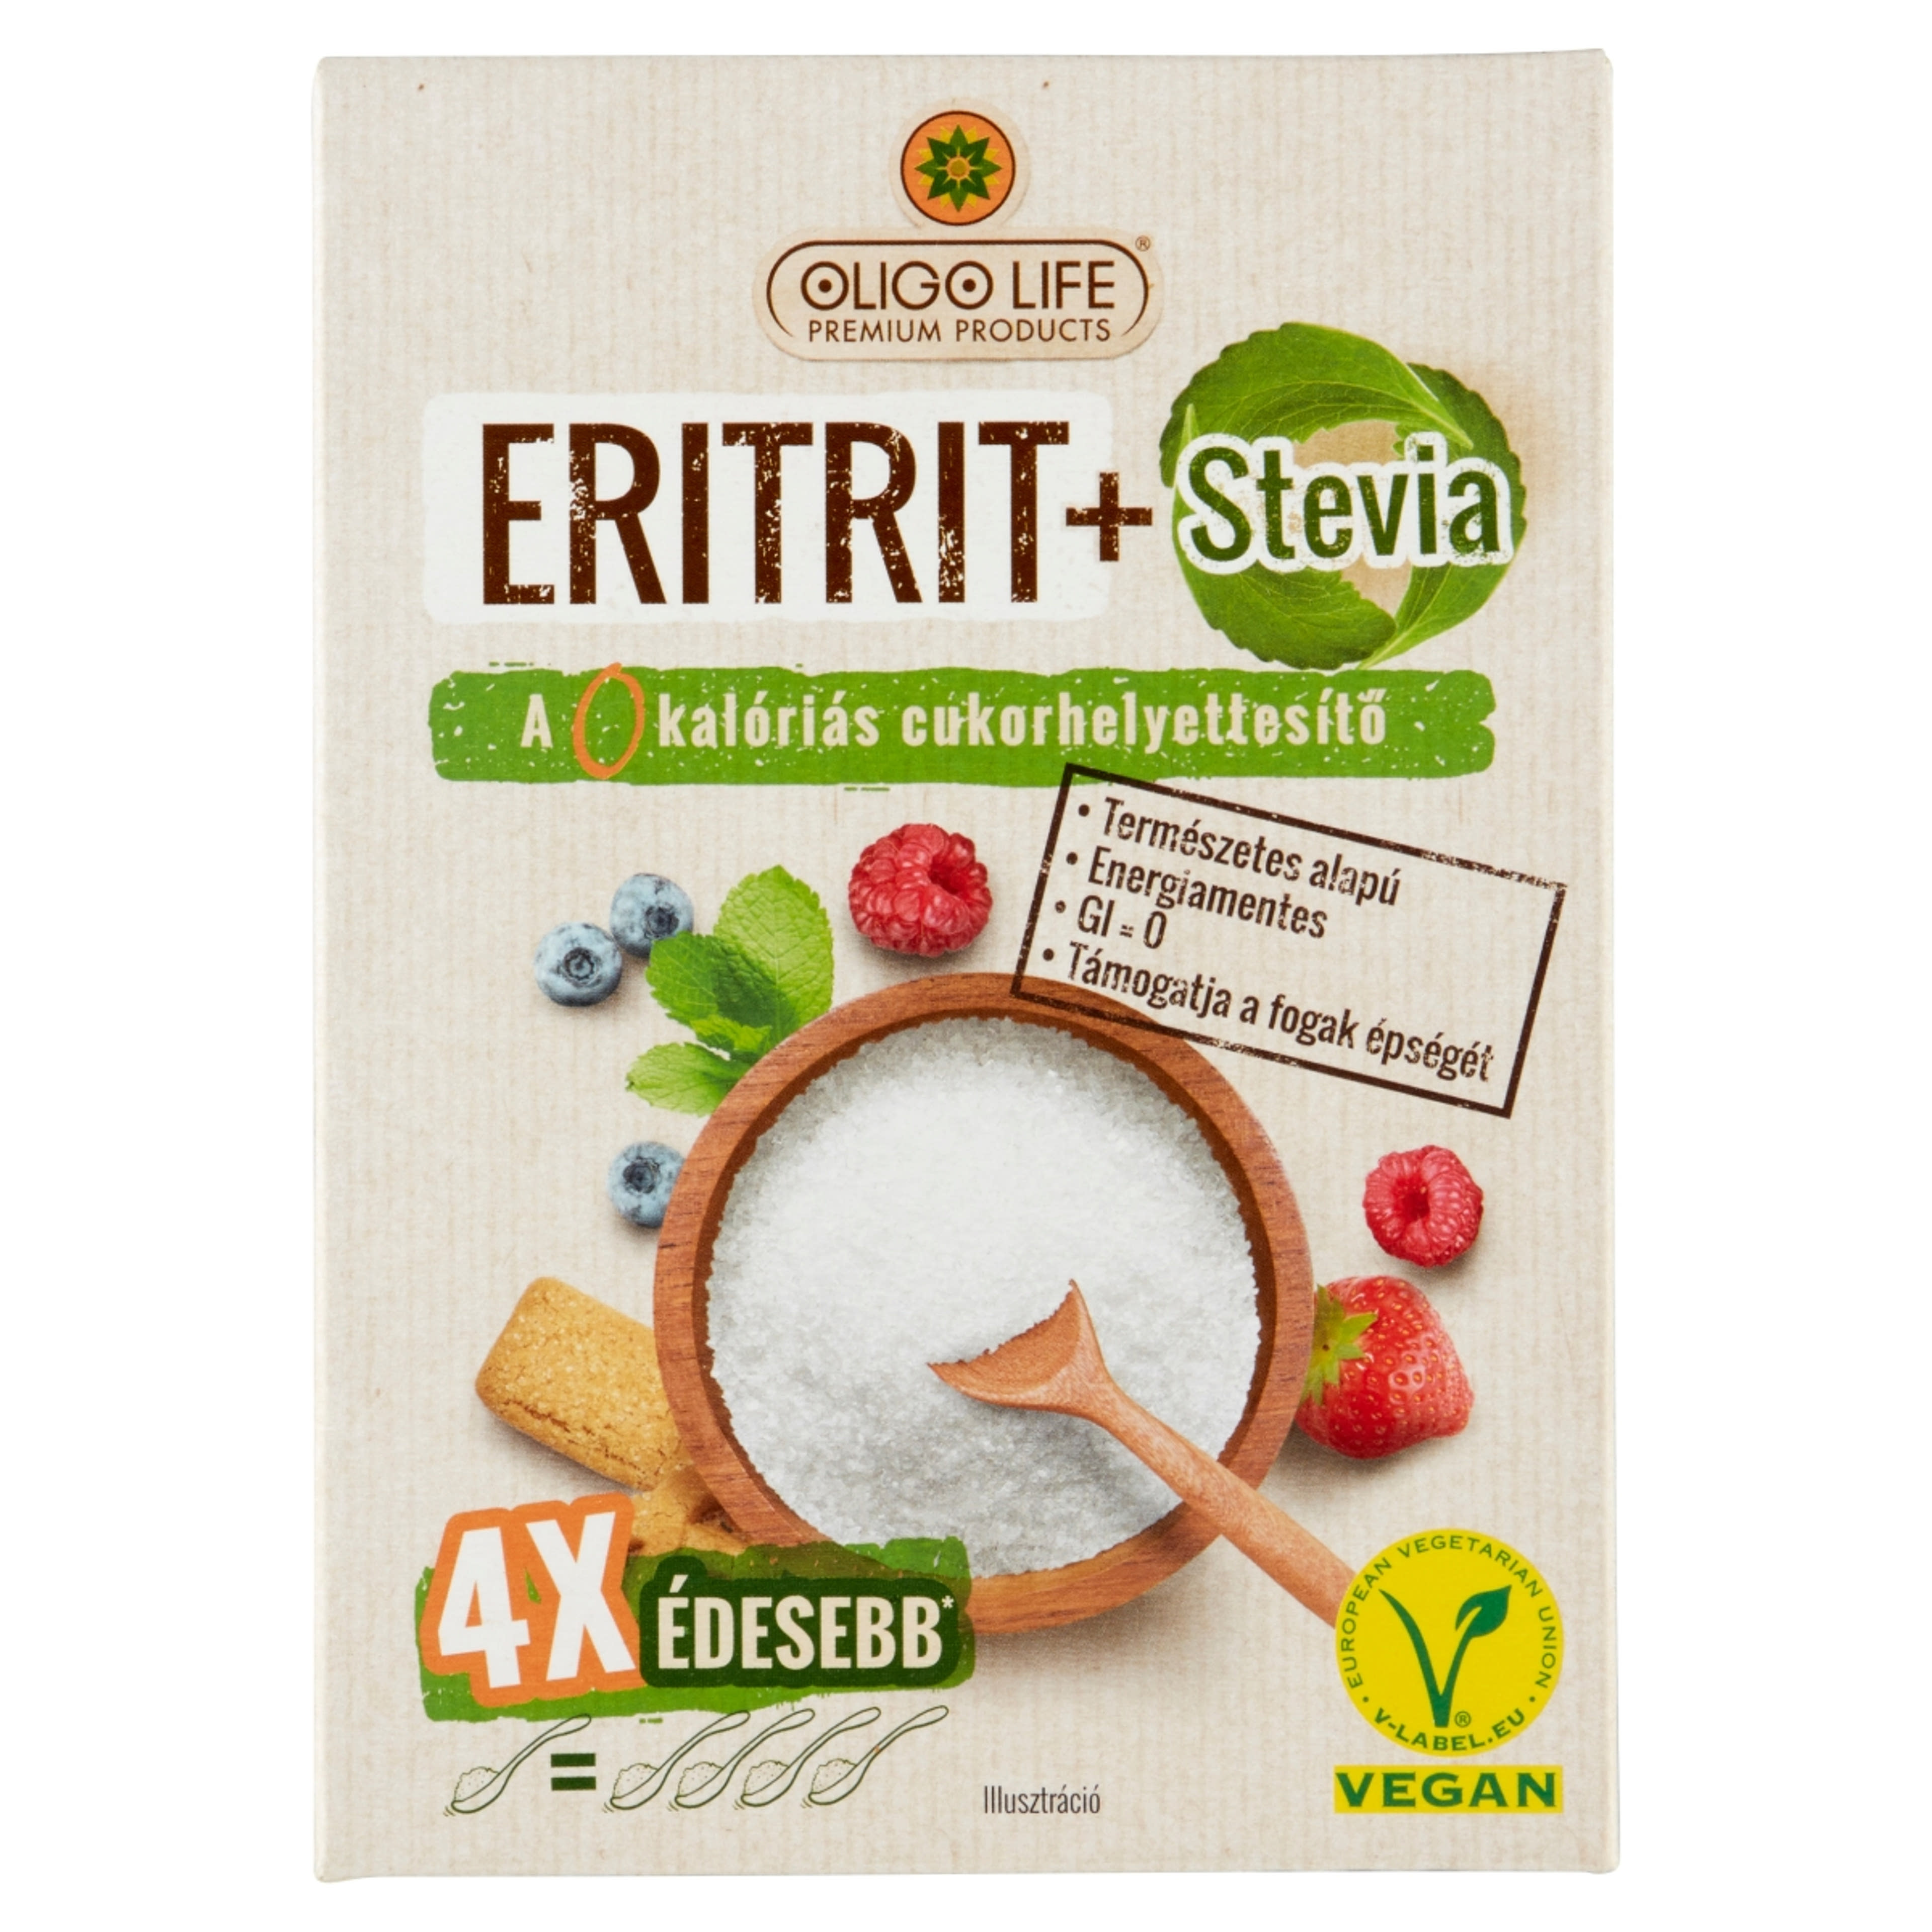 Oligo Life Eritrit & Stevia 4X édesebb édesítőszer - 275 g